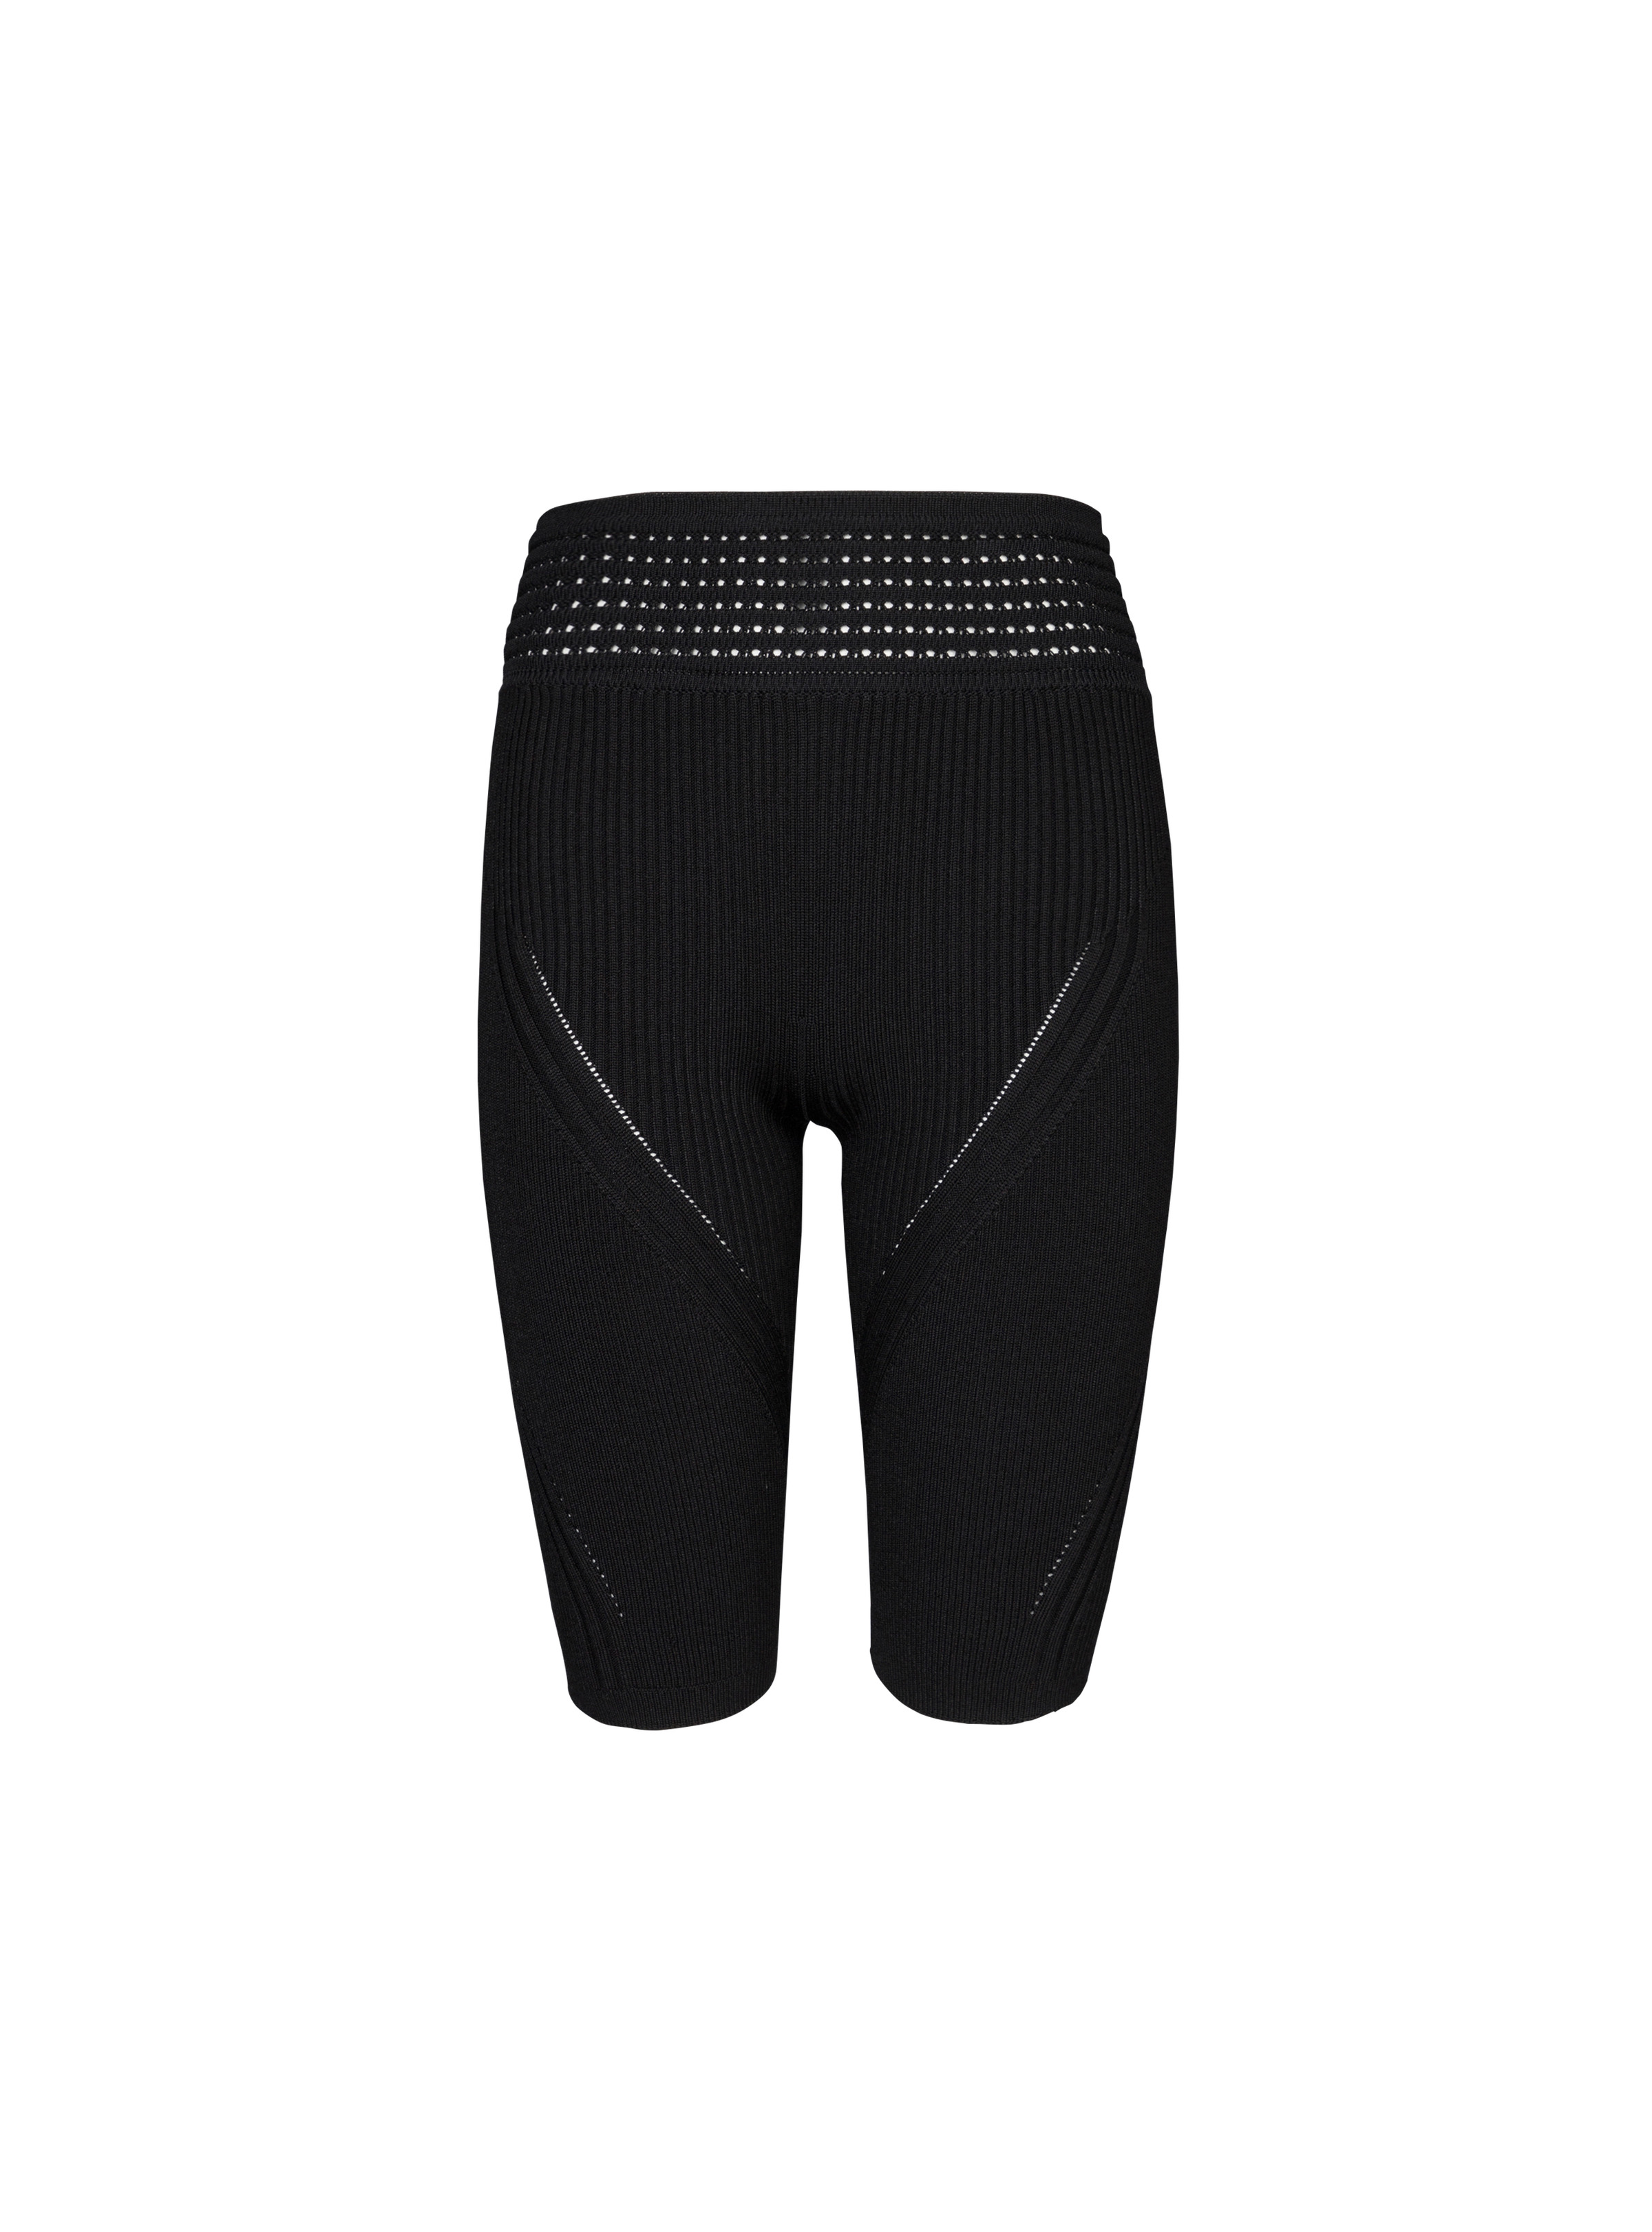 Knit cycling shorts - 1